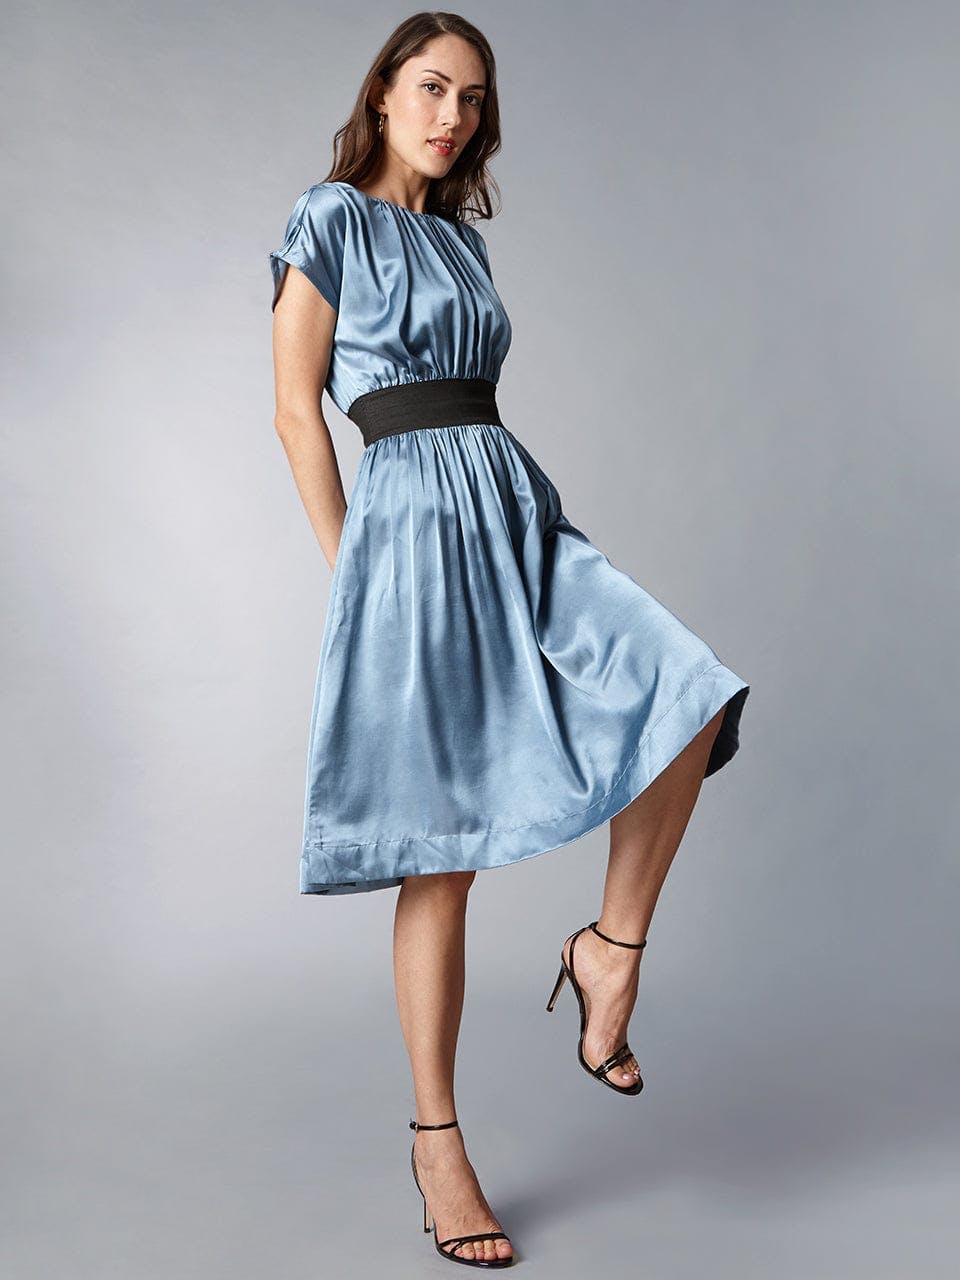 Midi Dress, a product by tara and i